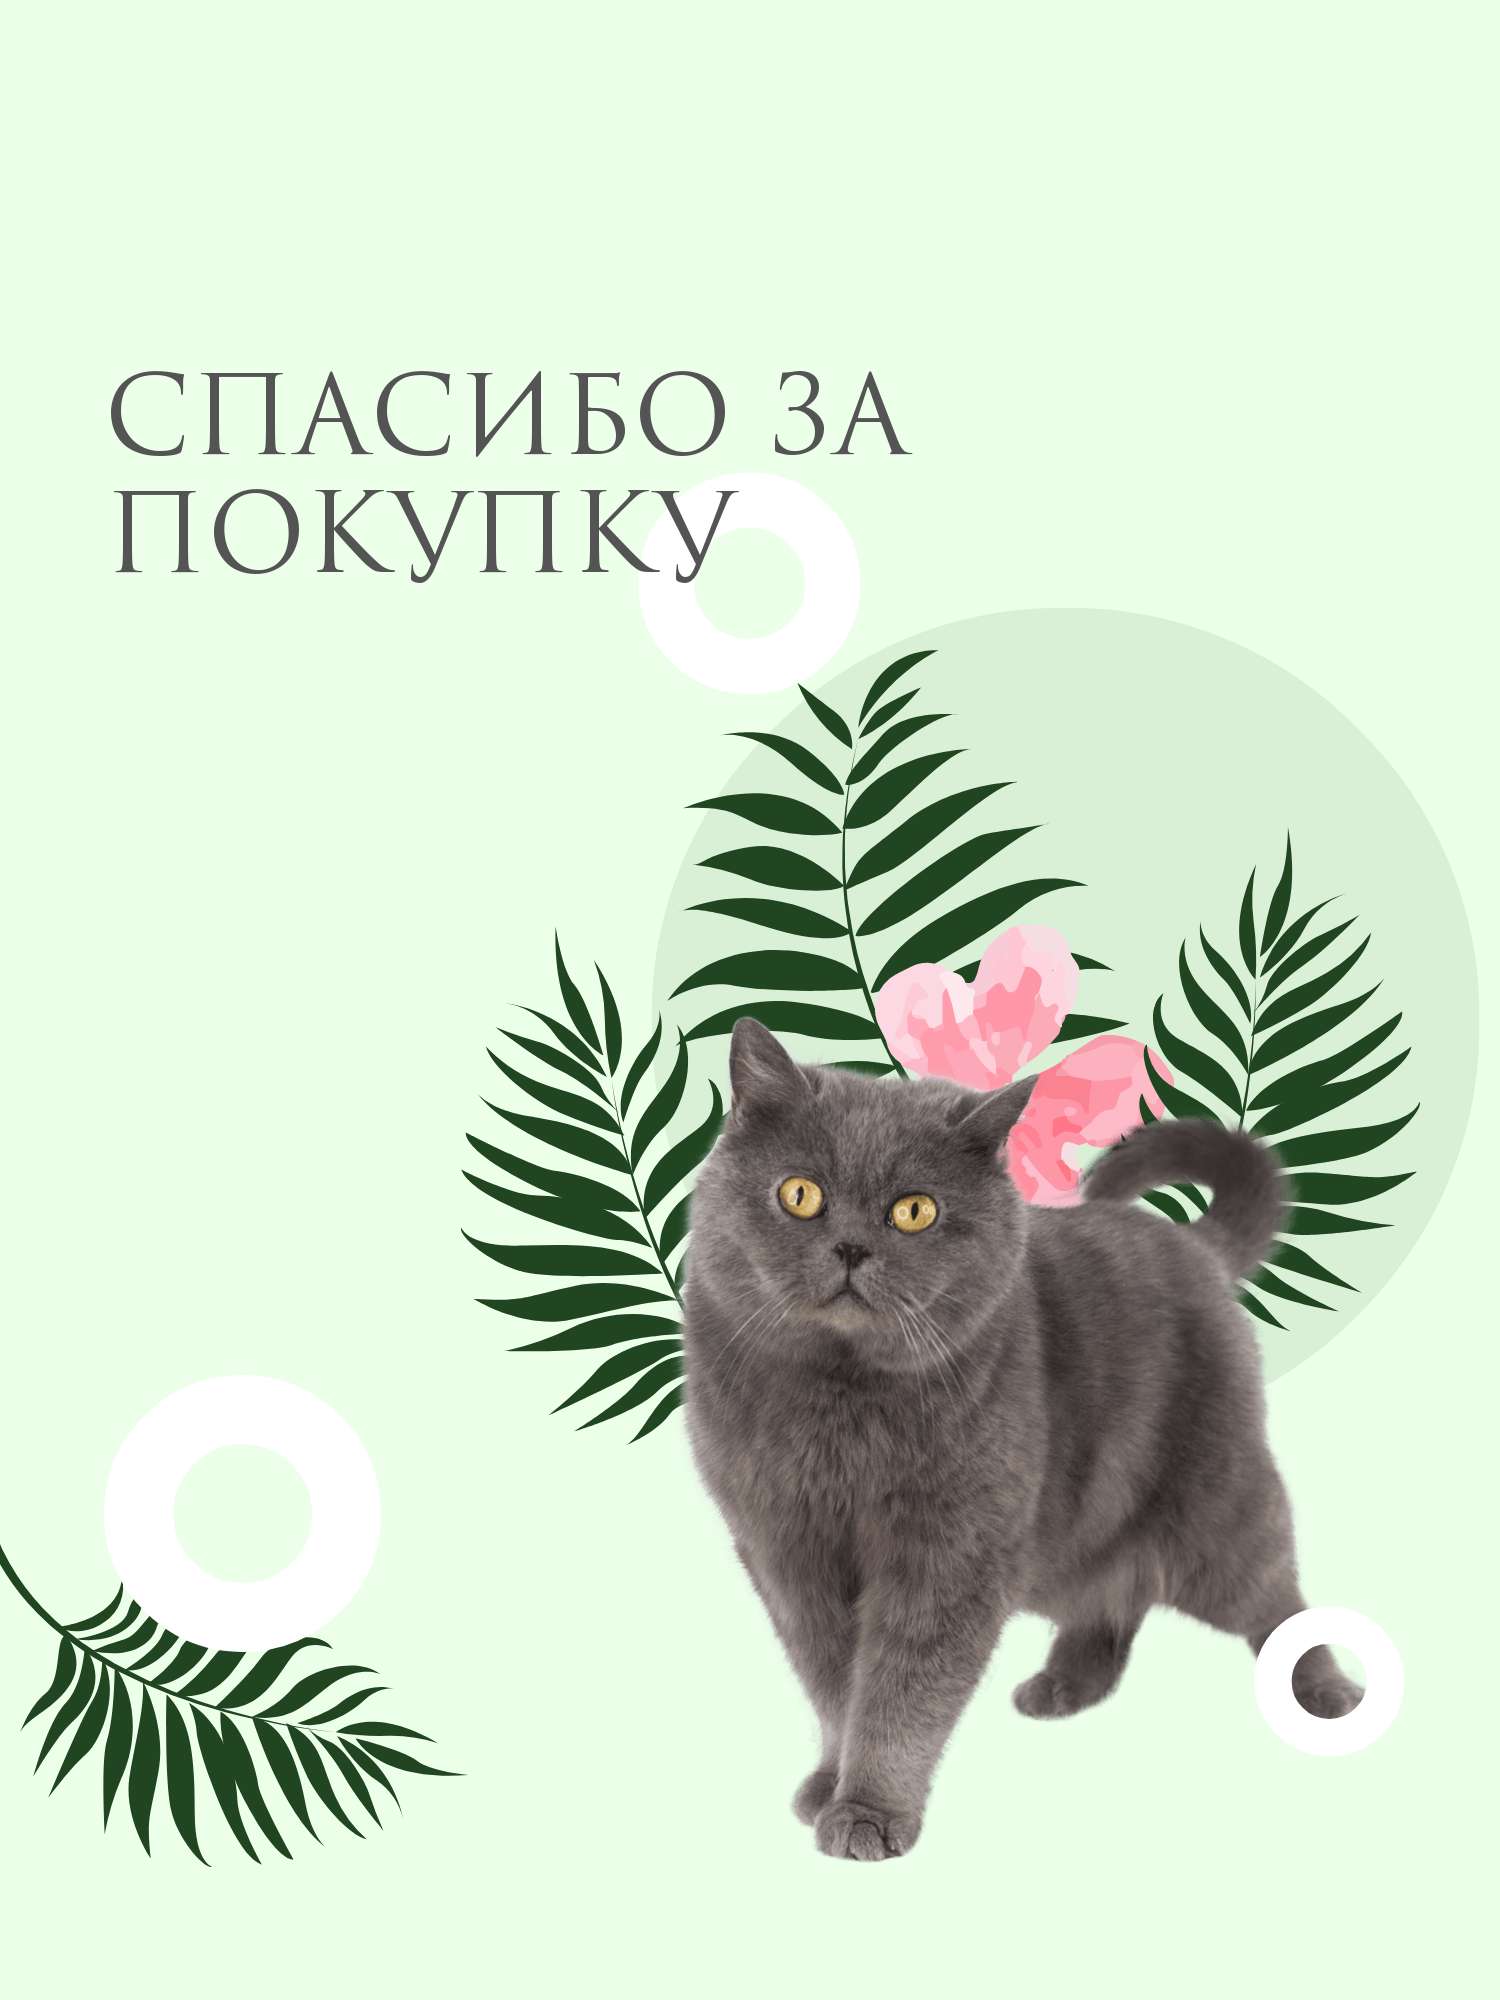 Забавная открытка с котиком и папоротниками на нежно-голубом фоне